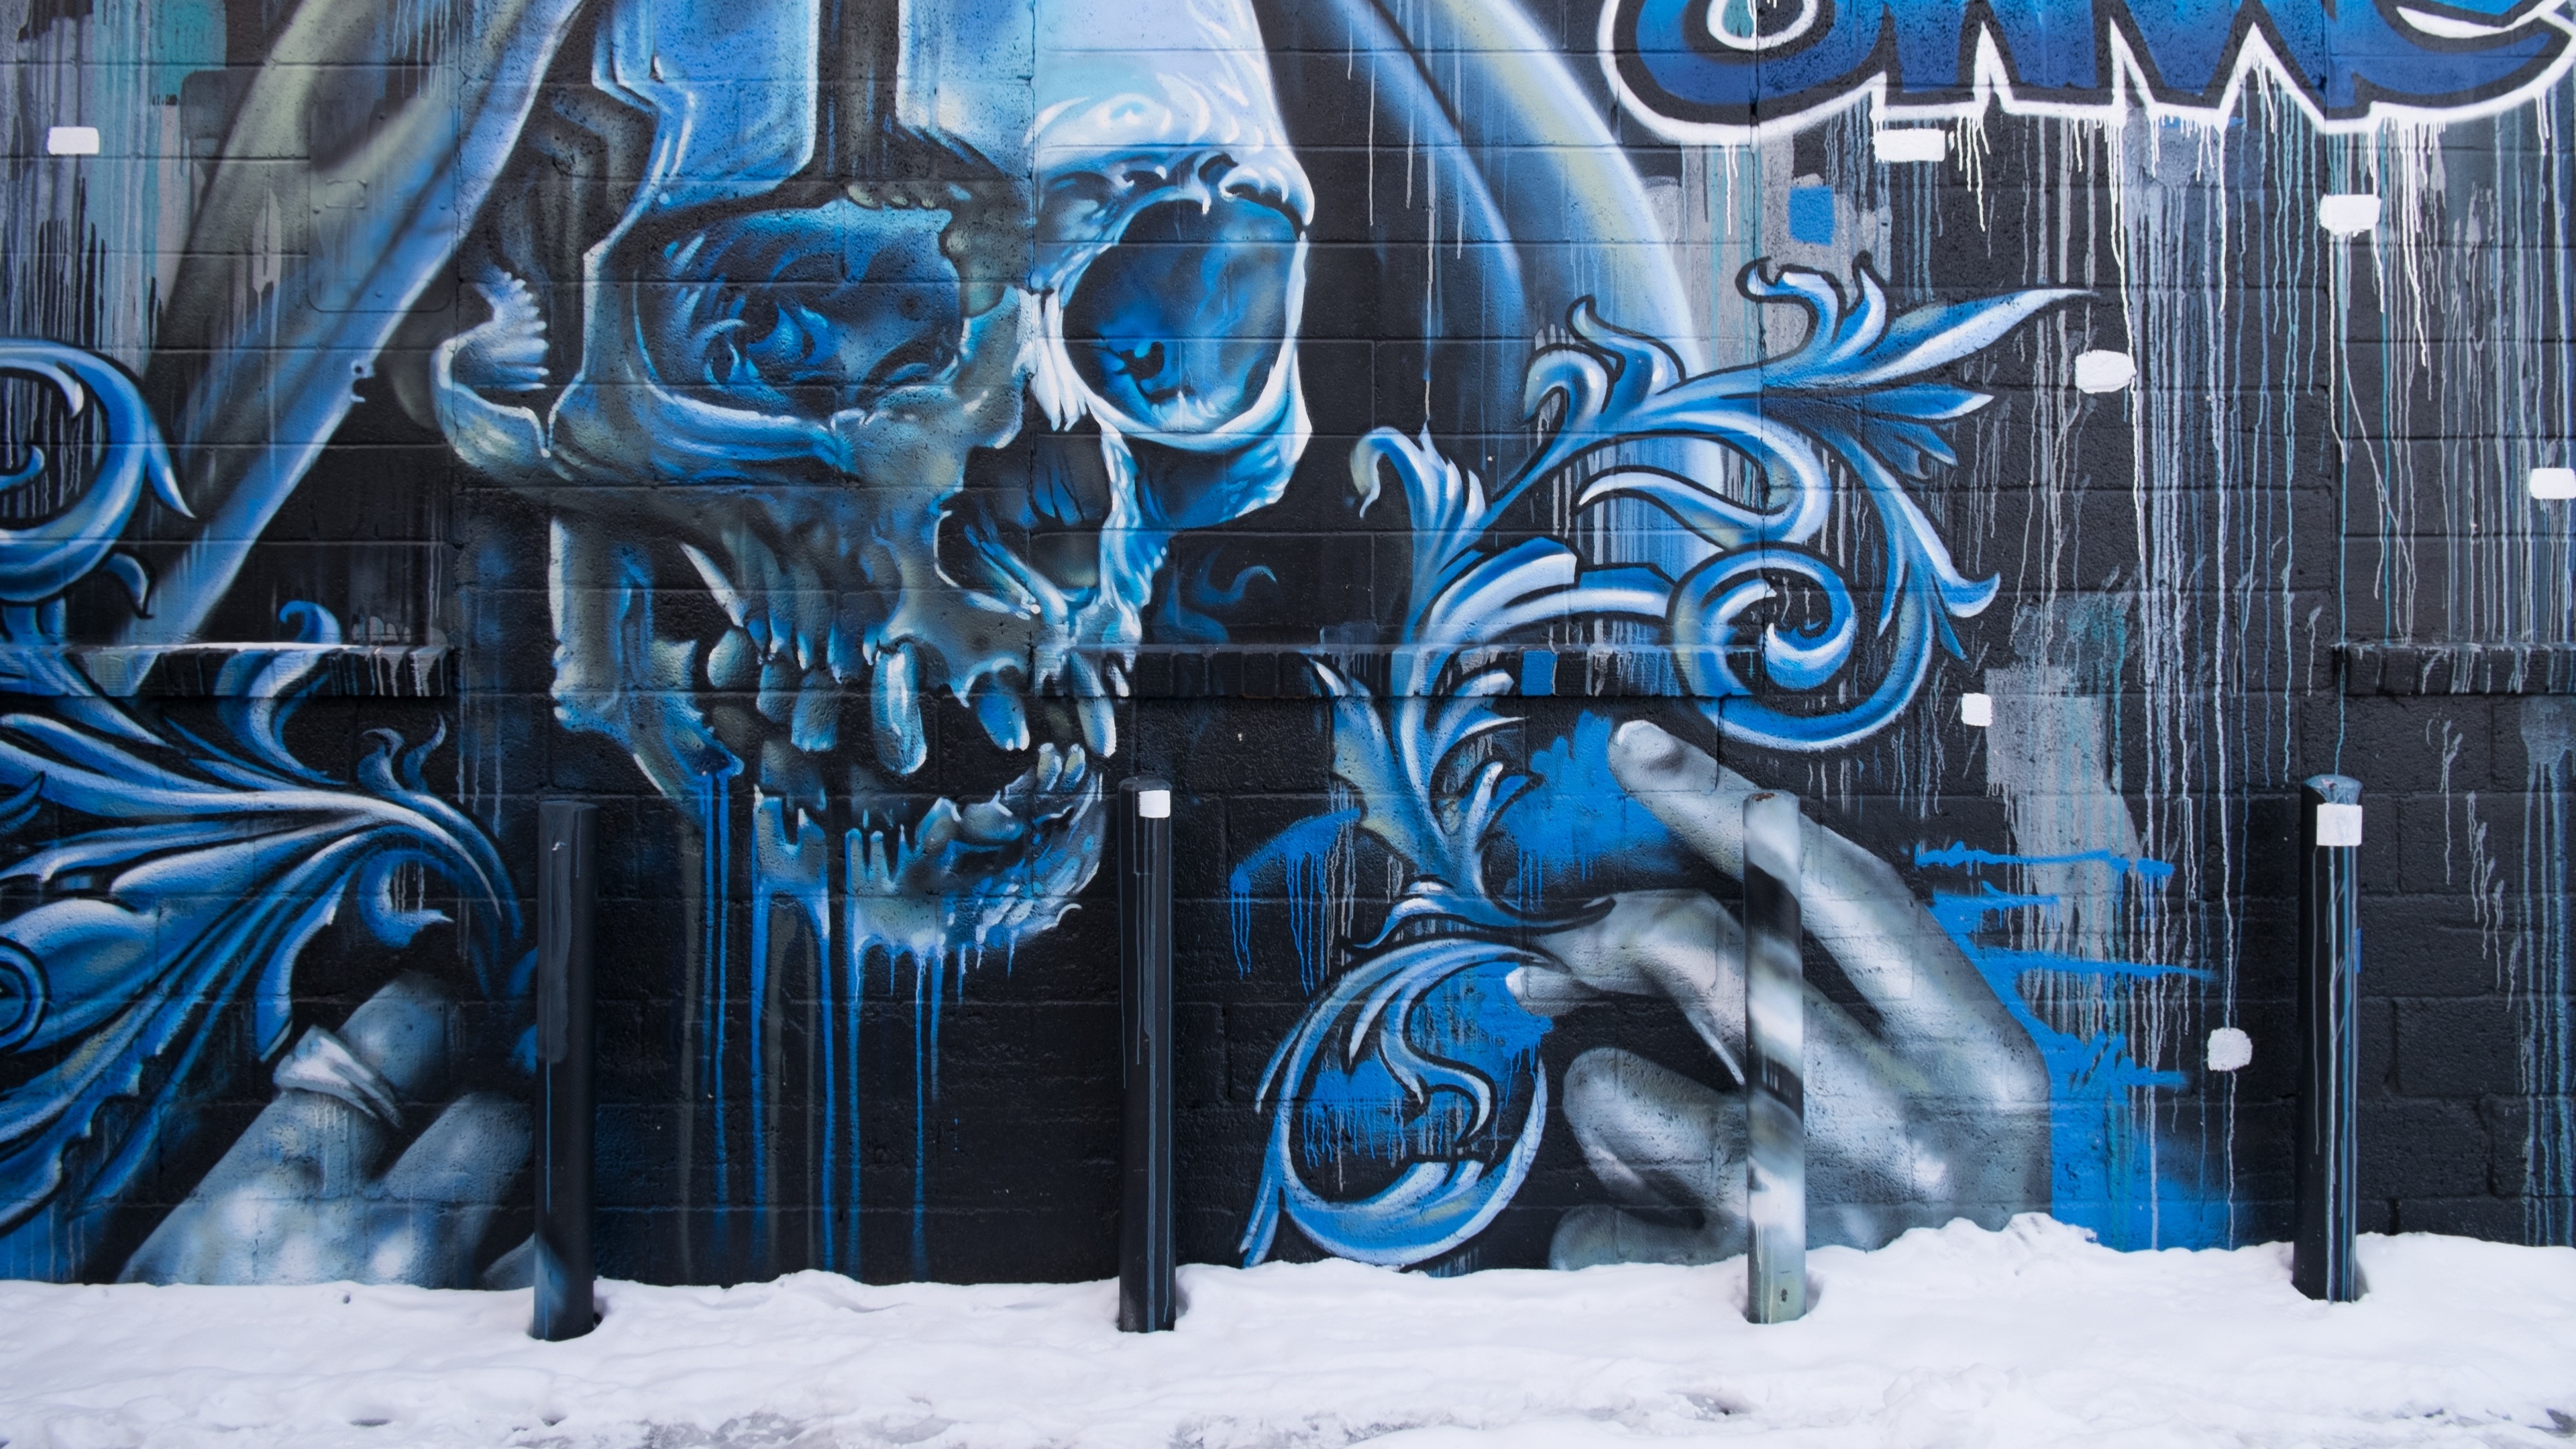 Wallpaper 4k skull, graffiti, street art, wall 4k Wallpaper